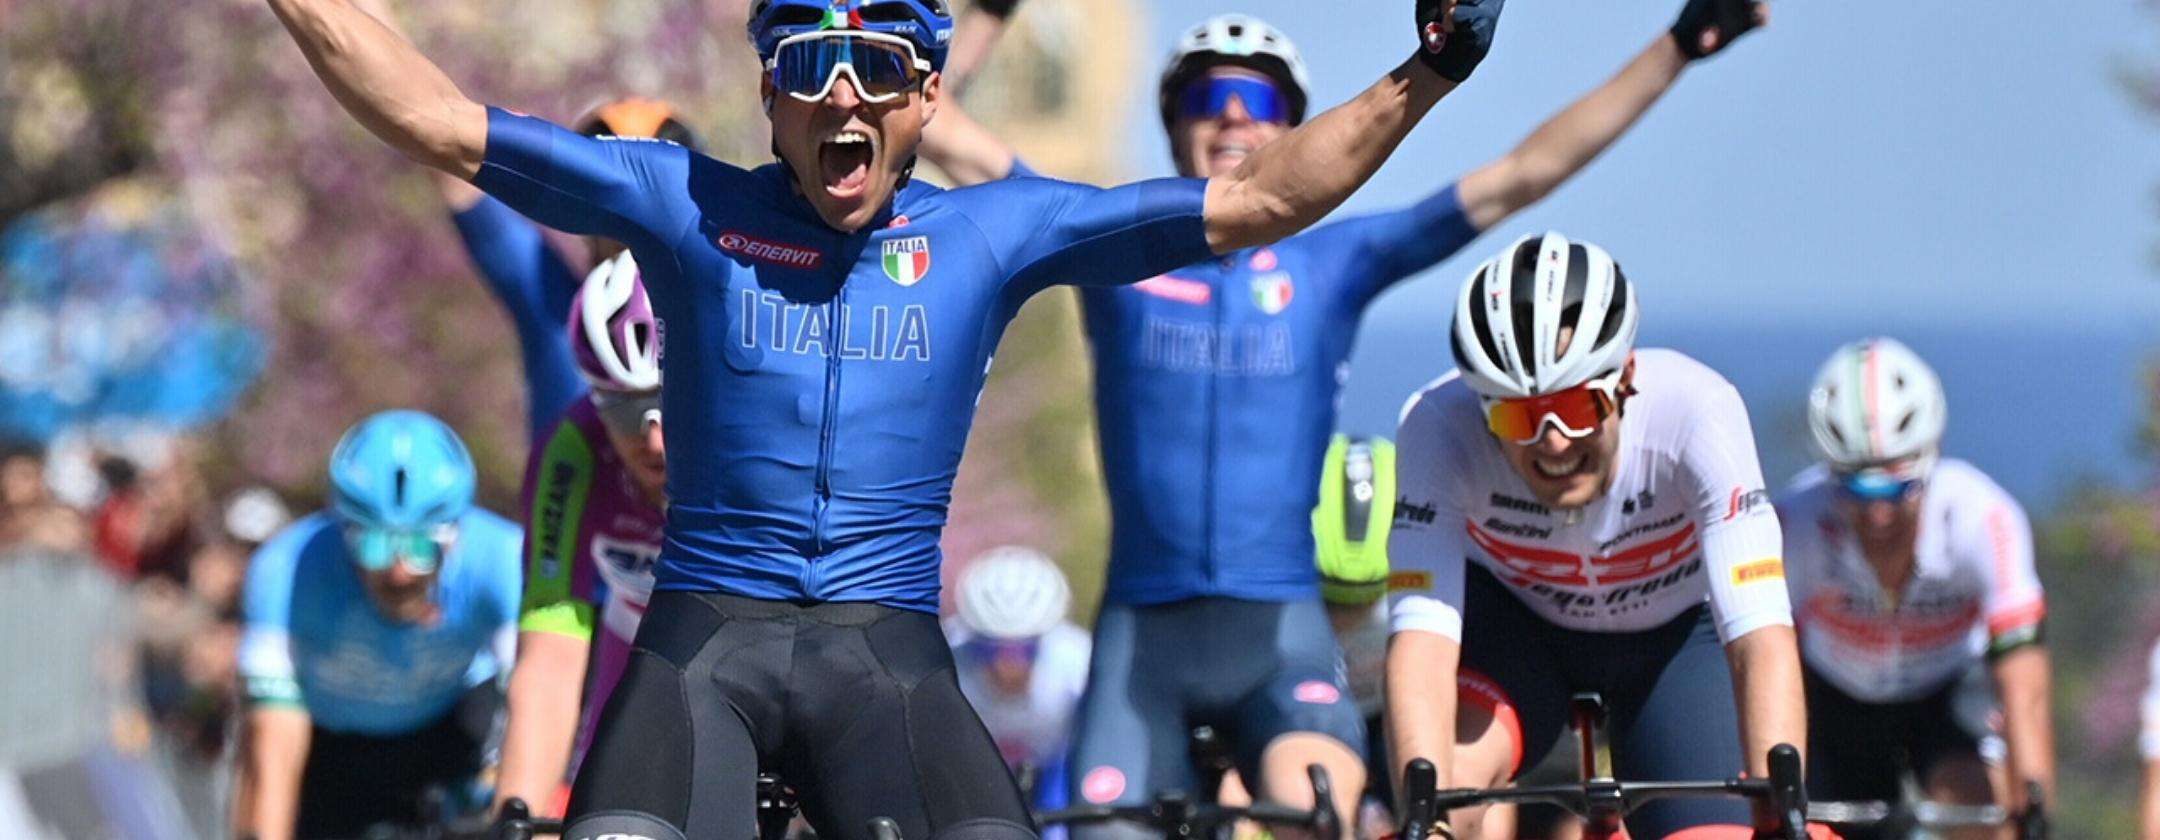 Giro d'Italia 2022: come vedere le gare gratis in streaming